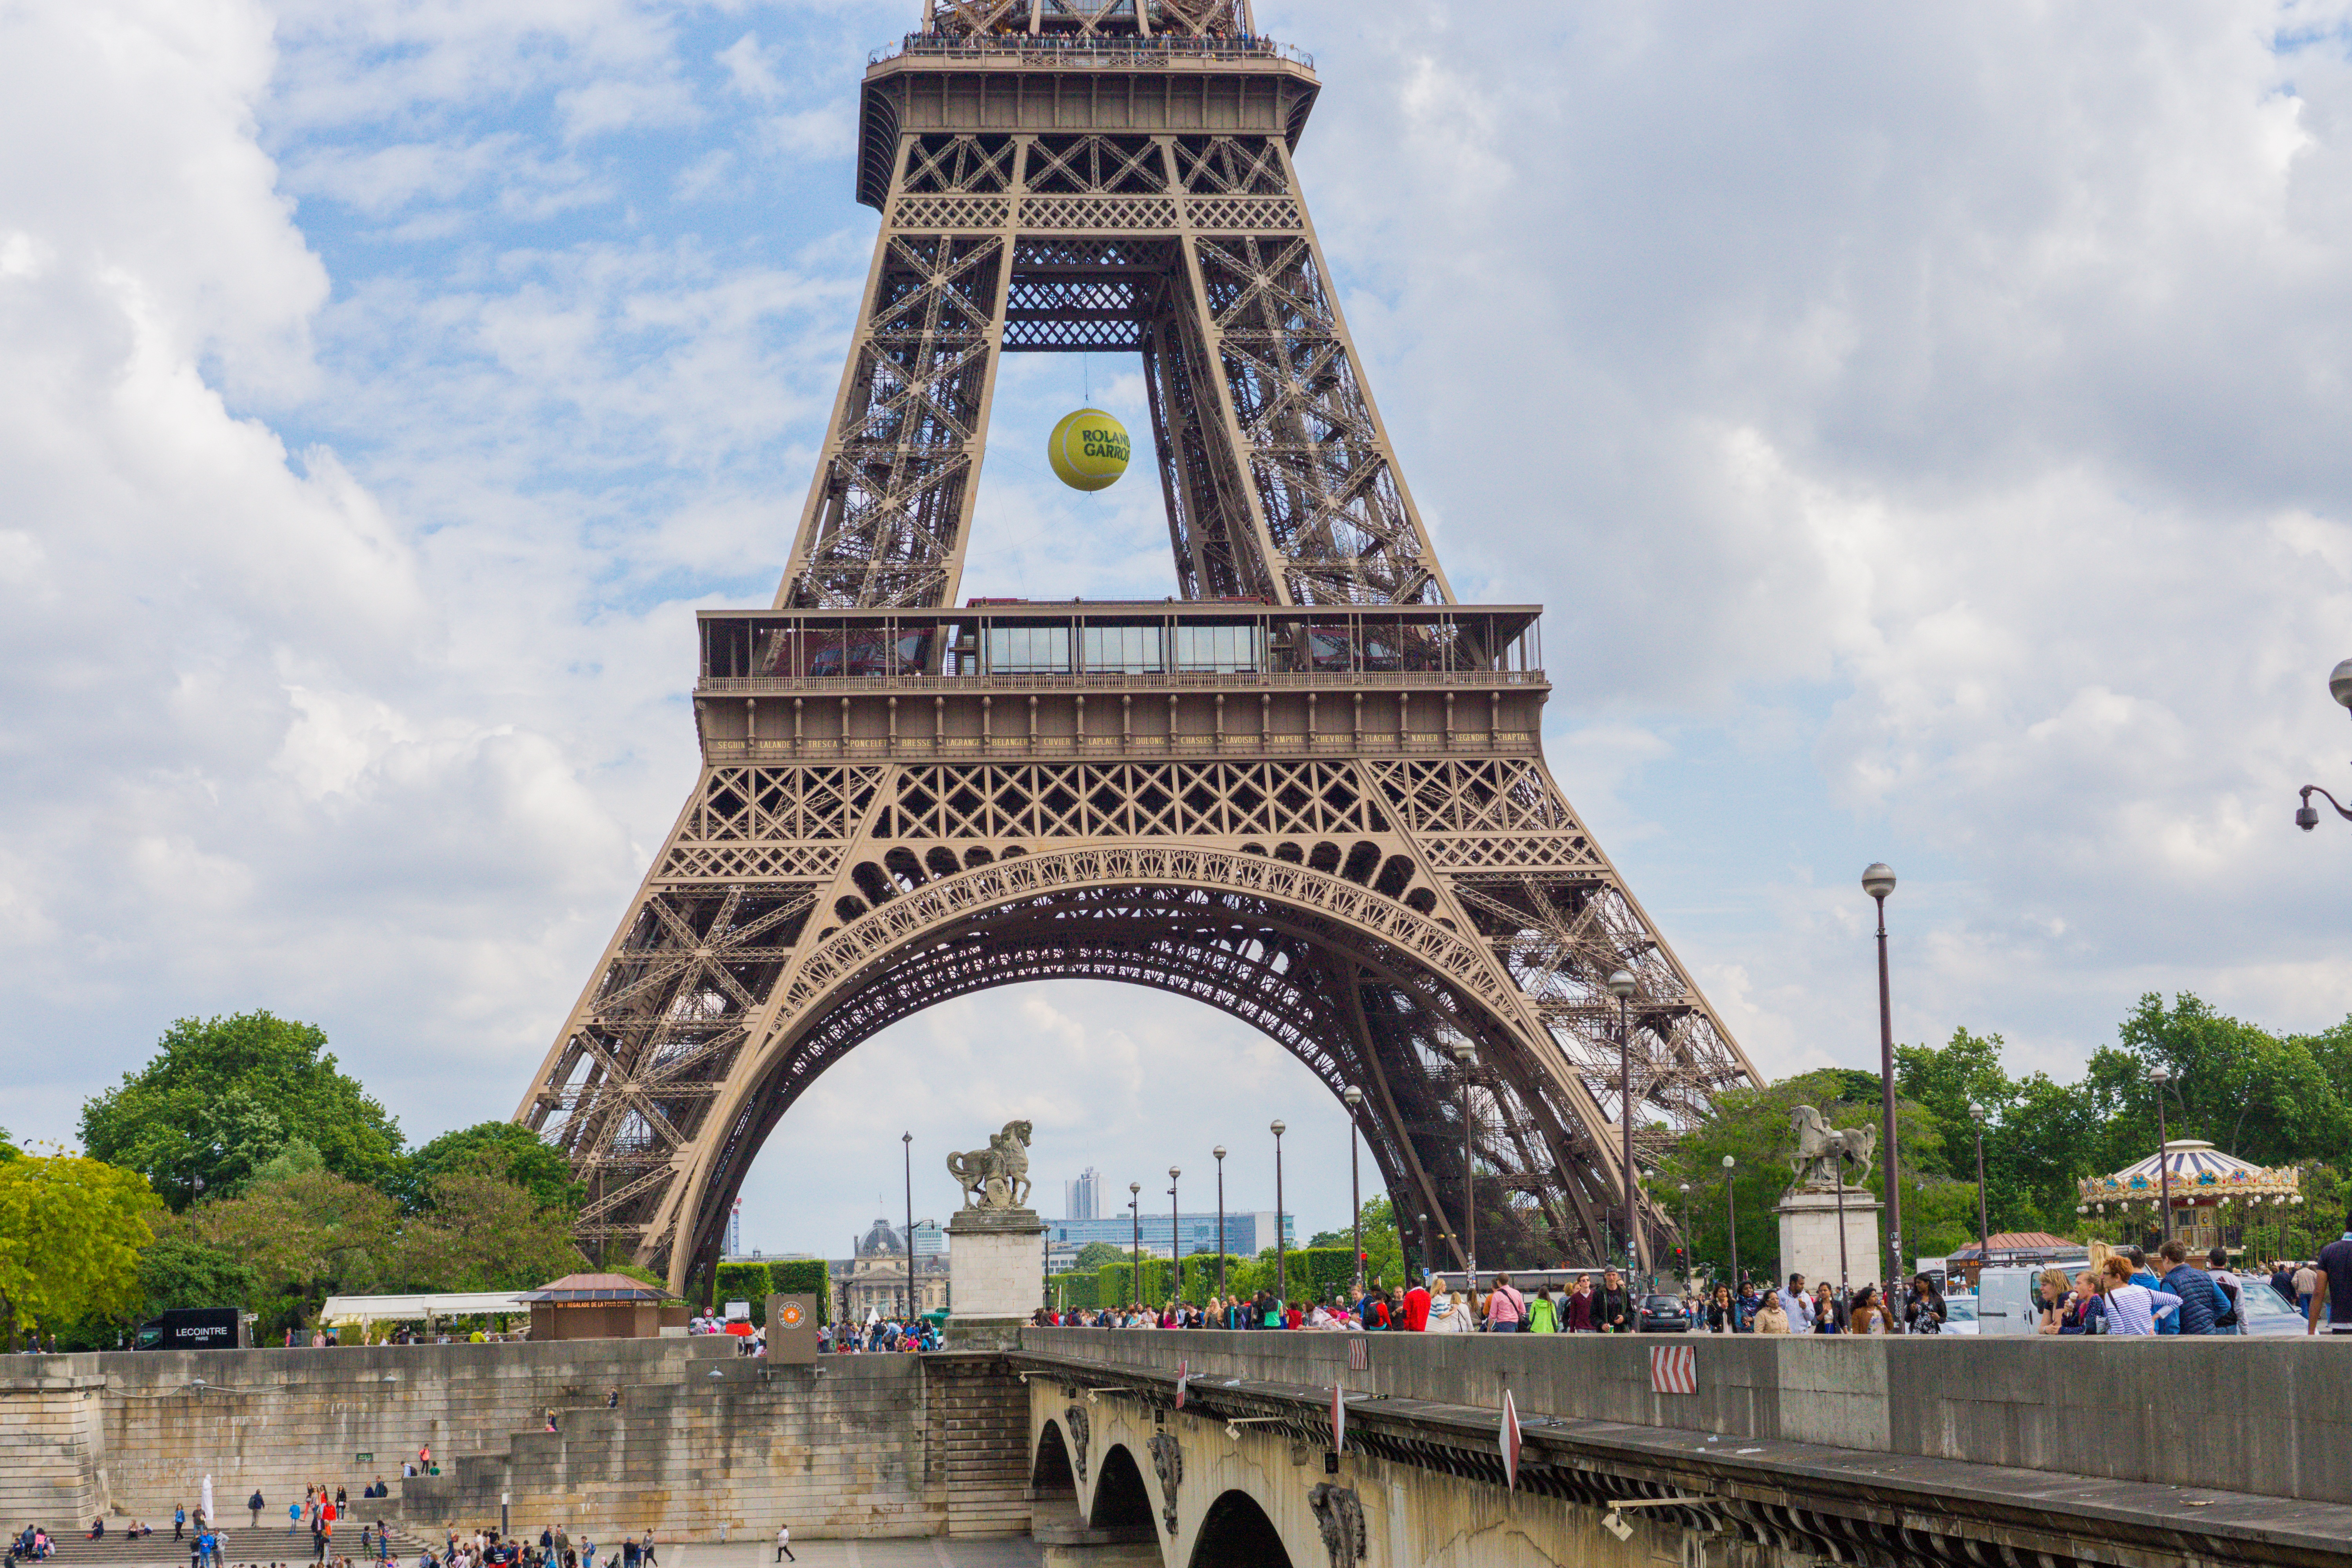 Какой год в париже. Франция Эйфель мост. Франция Париж Эйфелева башня. Эйфелева башня (Париж), арх. Эйфель.. Париж памятник Эйфелева башня.